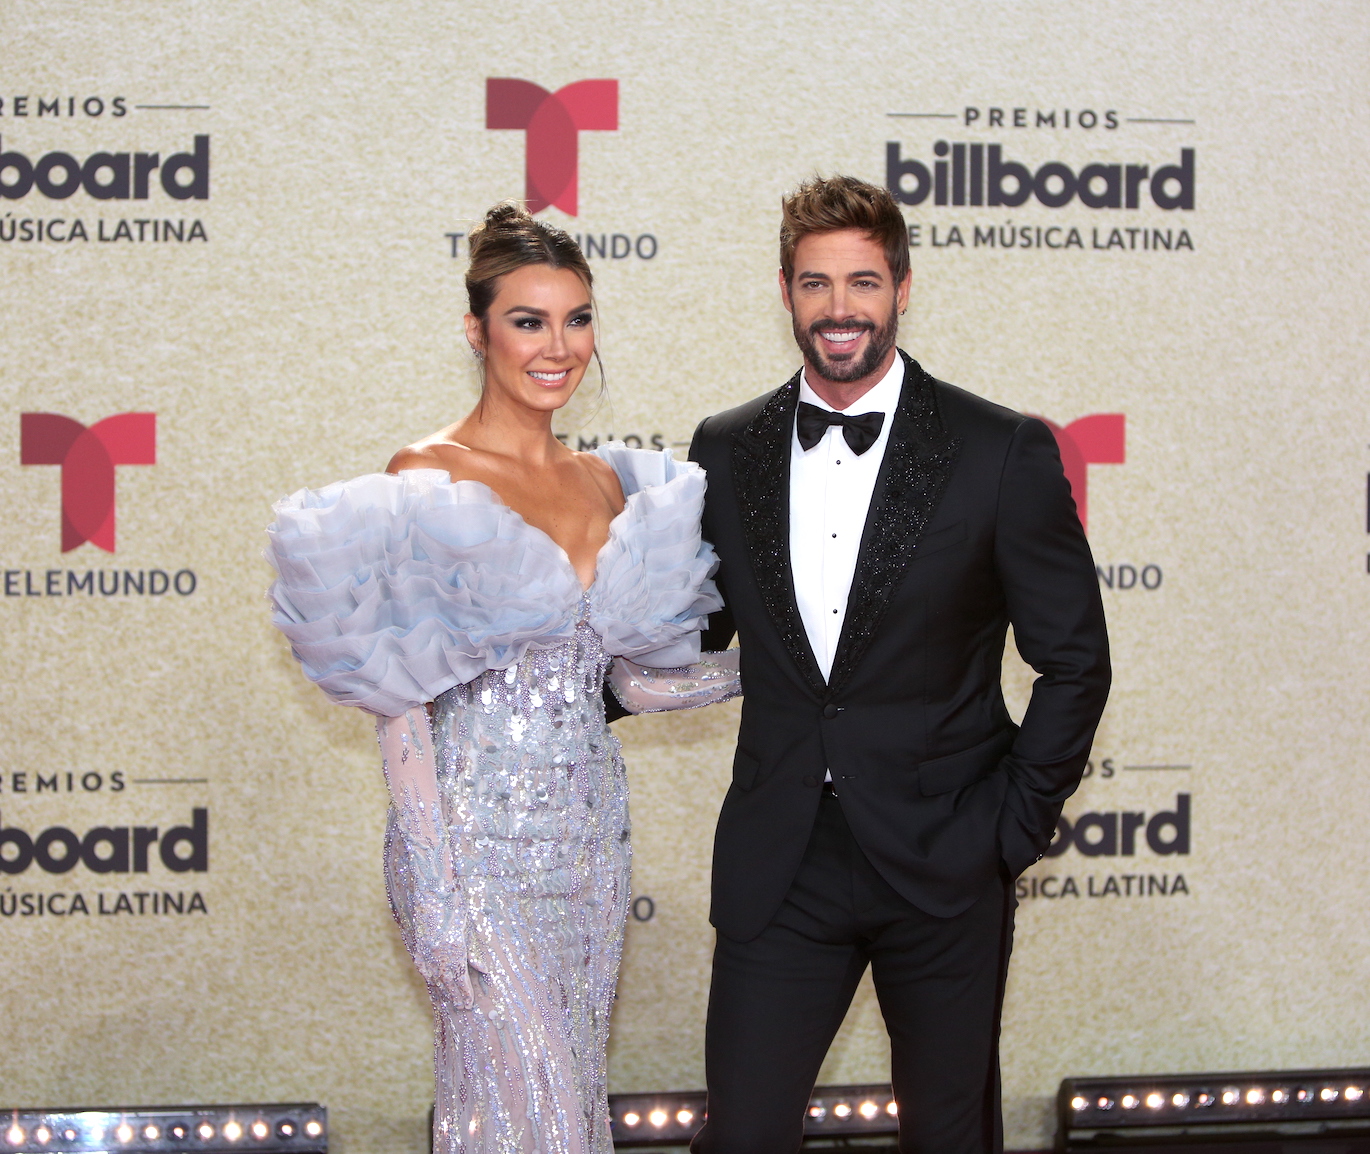 William Levy y Elizabeth Gutiérrez en la alfombra de los Premios Billboard de la Música Latina (Telemundo)/Miami, 23 de septiembre 2021.